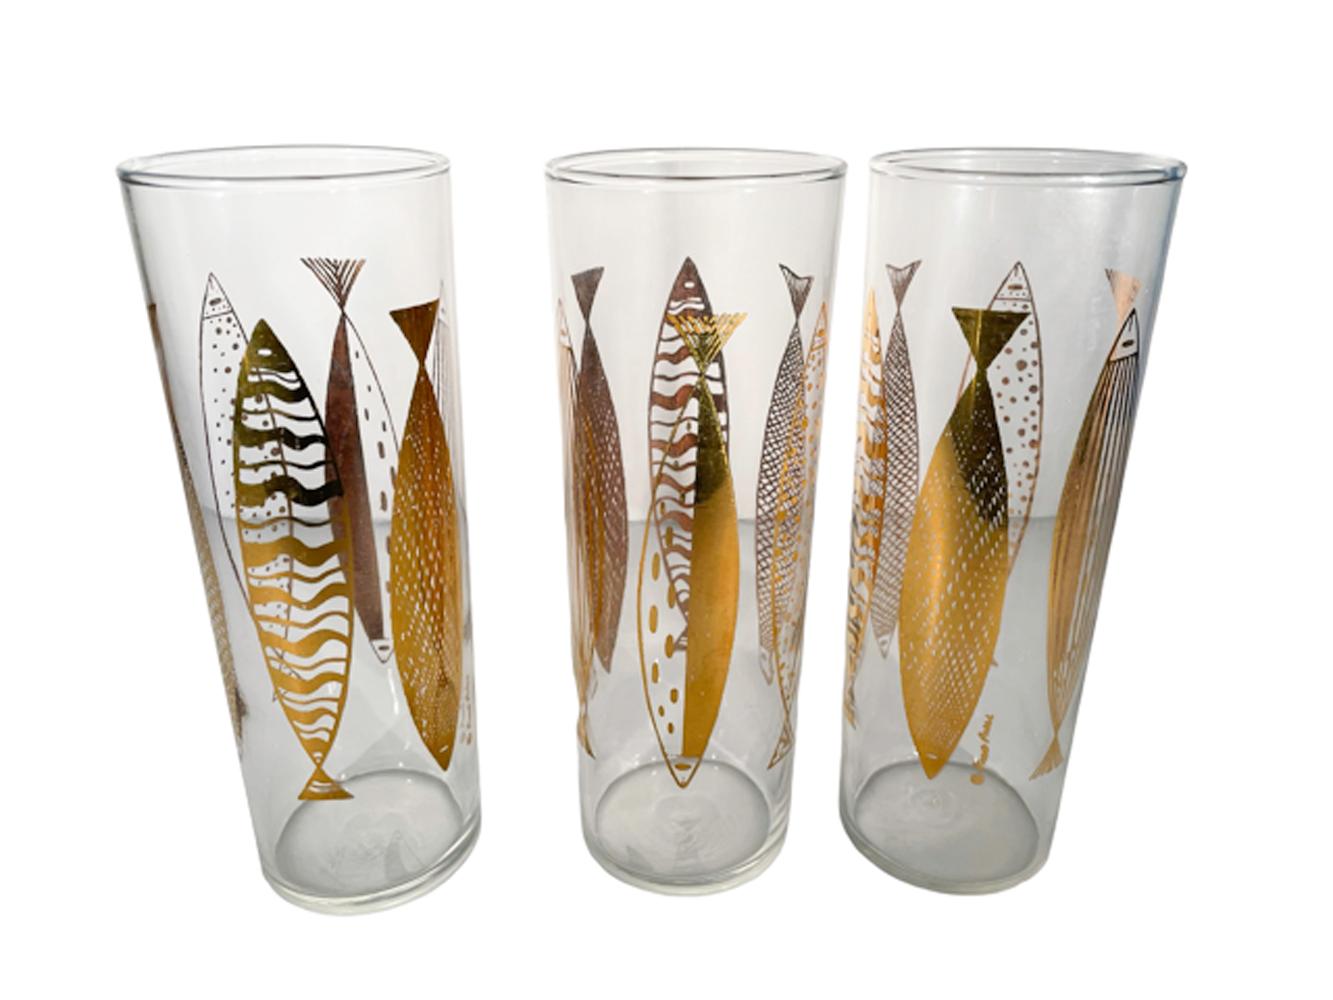 Six Tom Collins du milieu du siècle en verre dans le style Atomic conçu par Fred Press. Verre transparent avec des poissons en or 22k aux motifs variés.